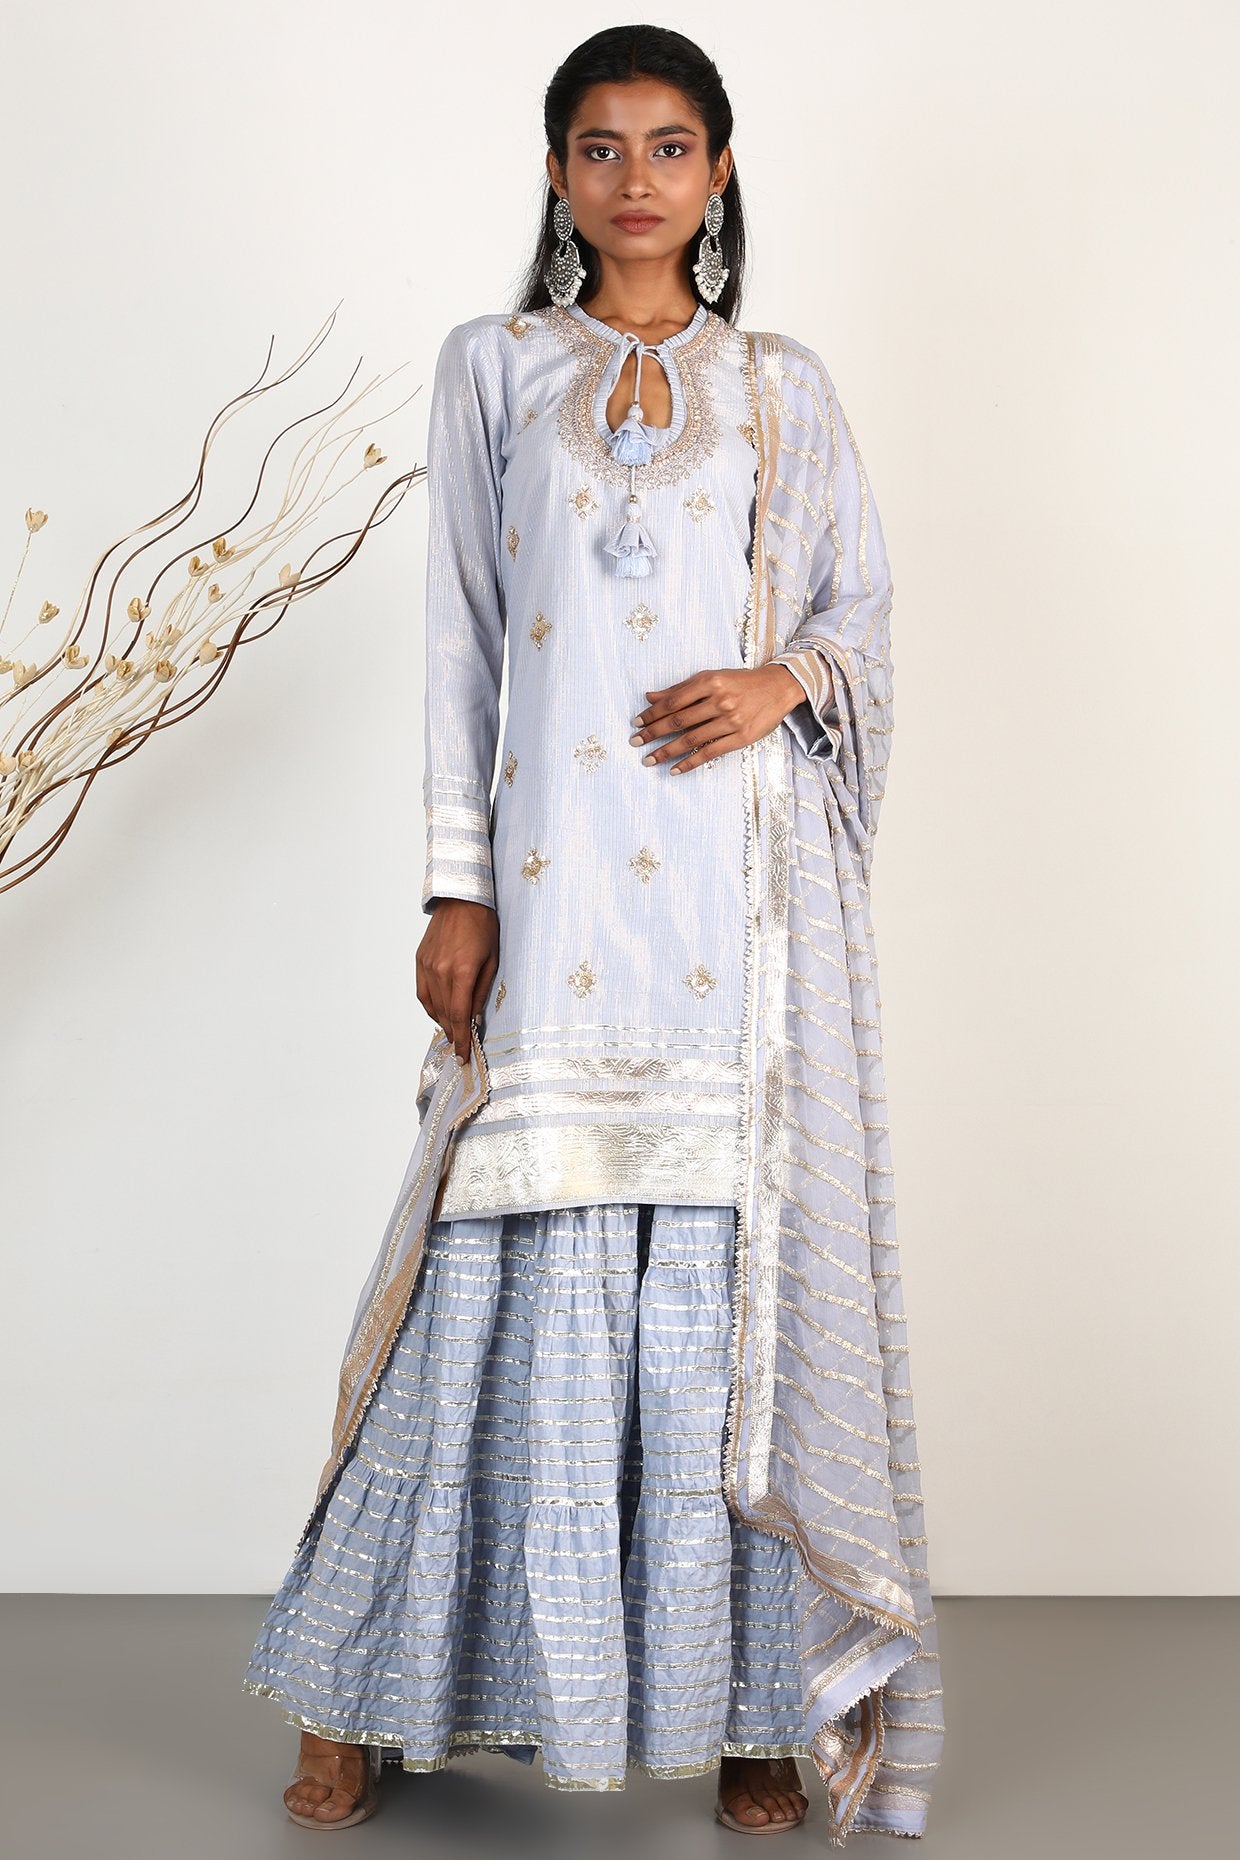 Gopi vaid - Sitara -Matka-sharara-set - Indian Designer Wear Online Shopping